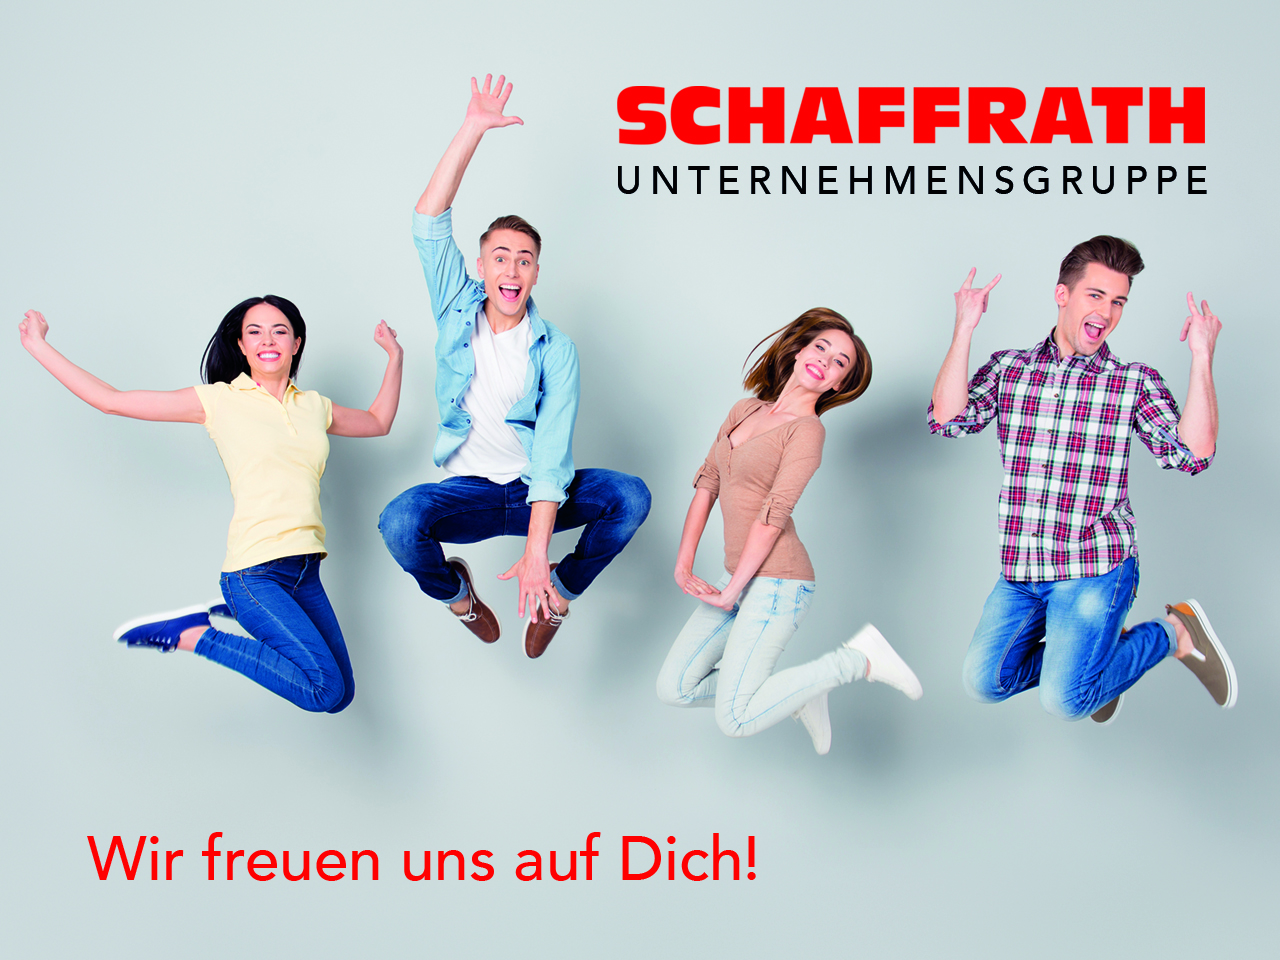 Schaffrath - Wir freuen uns auf Dich!